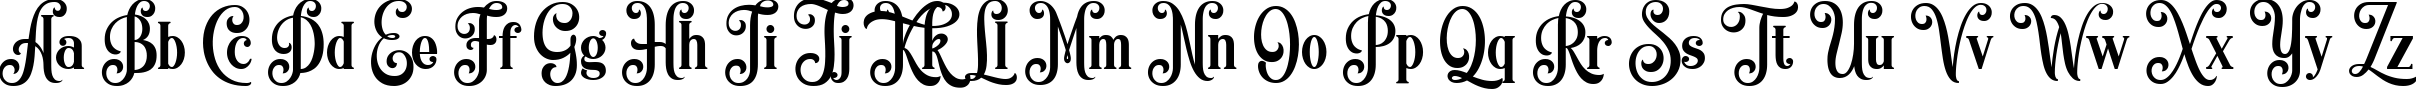 Пример написания английского алфавита шрифтом Quiska